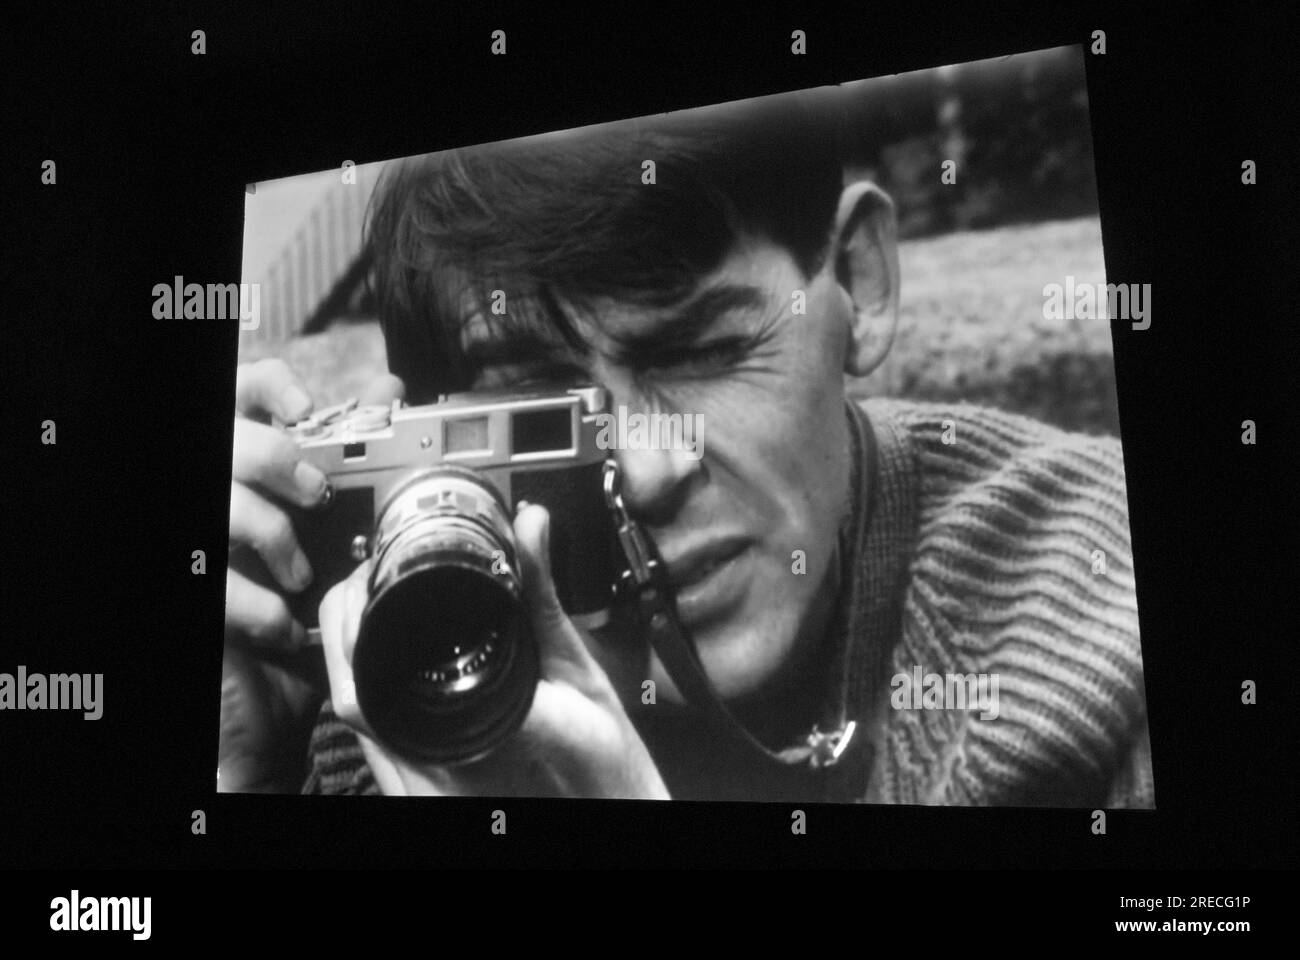 David Hurn, fotografo Magnum nel film degli anni '1960 di Ken Russell, "A House in Bayswater". Immagini tratte da una proiezione cinematografica. Londra, Inghilterra, 26 settembre 2017. HOMER SYKES Foto Stock